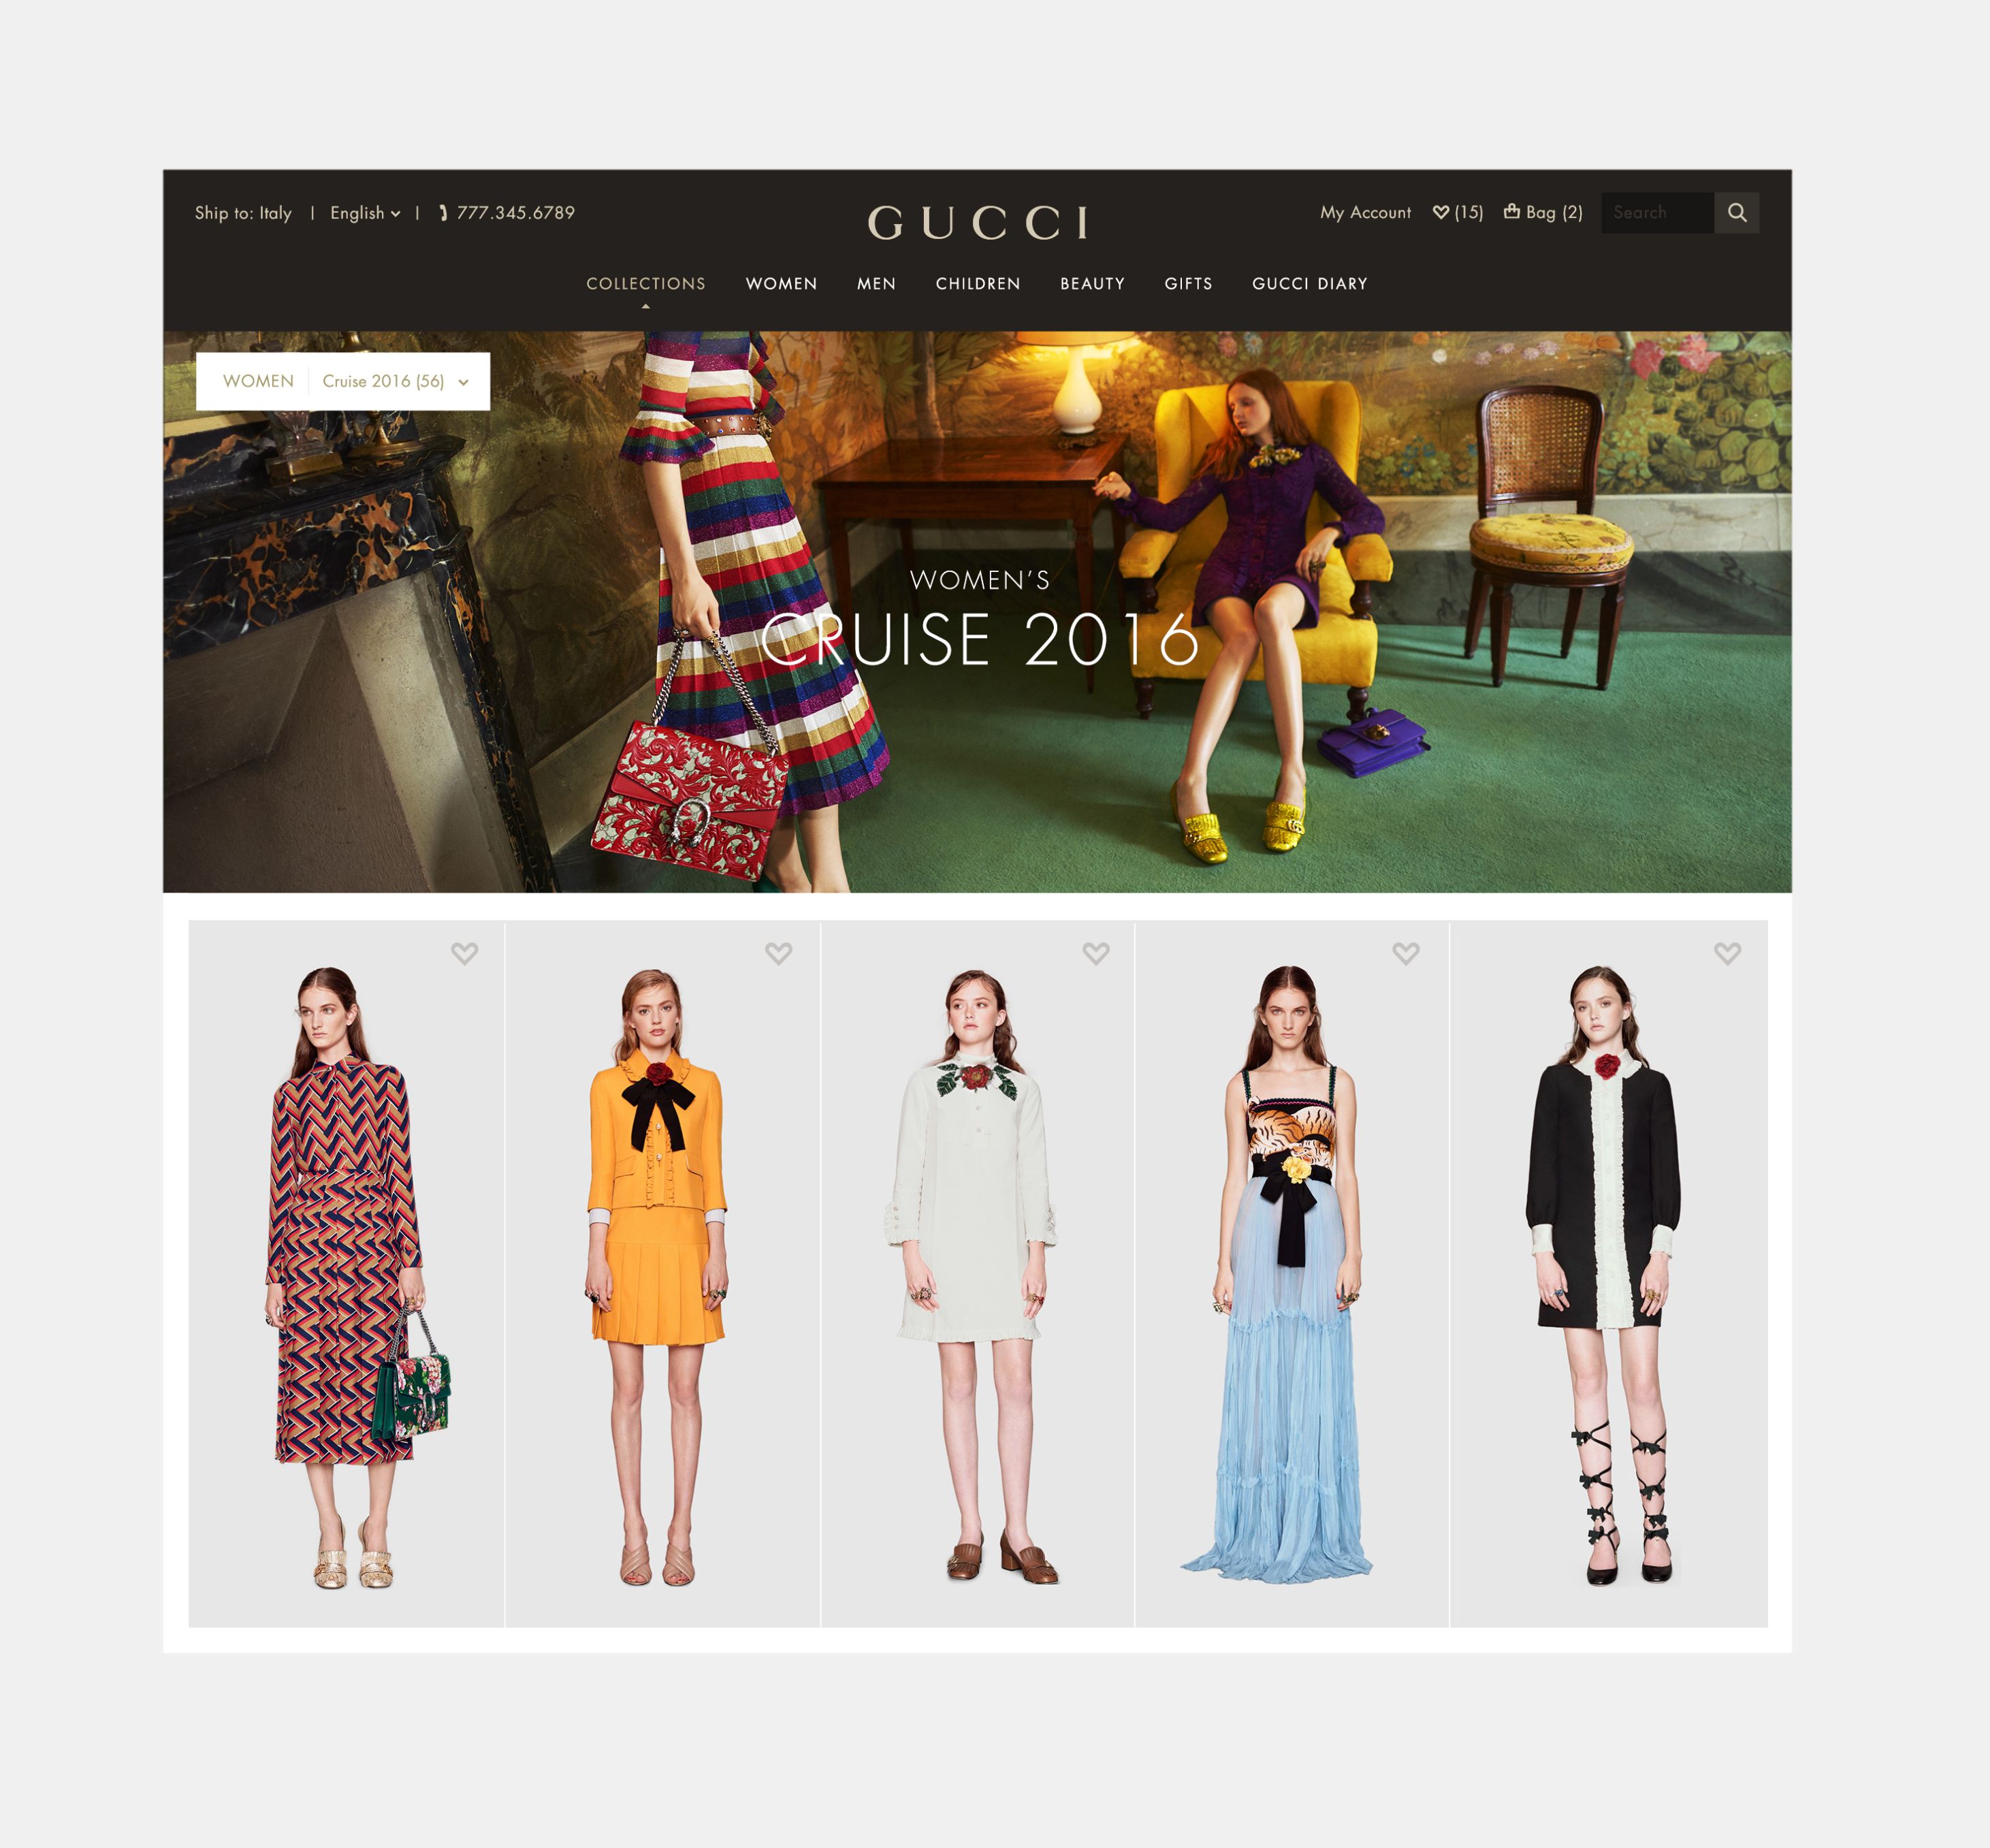 Gucci sito ufficiale: il nuovo e-commerce che unisce design, immagini e una narrazione coinvolgente